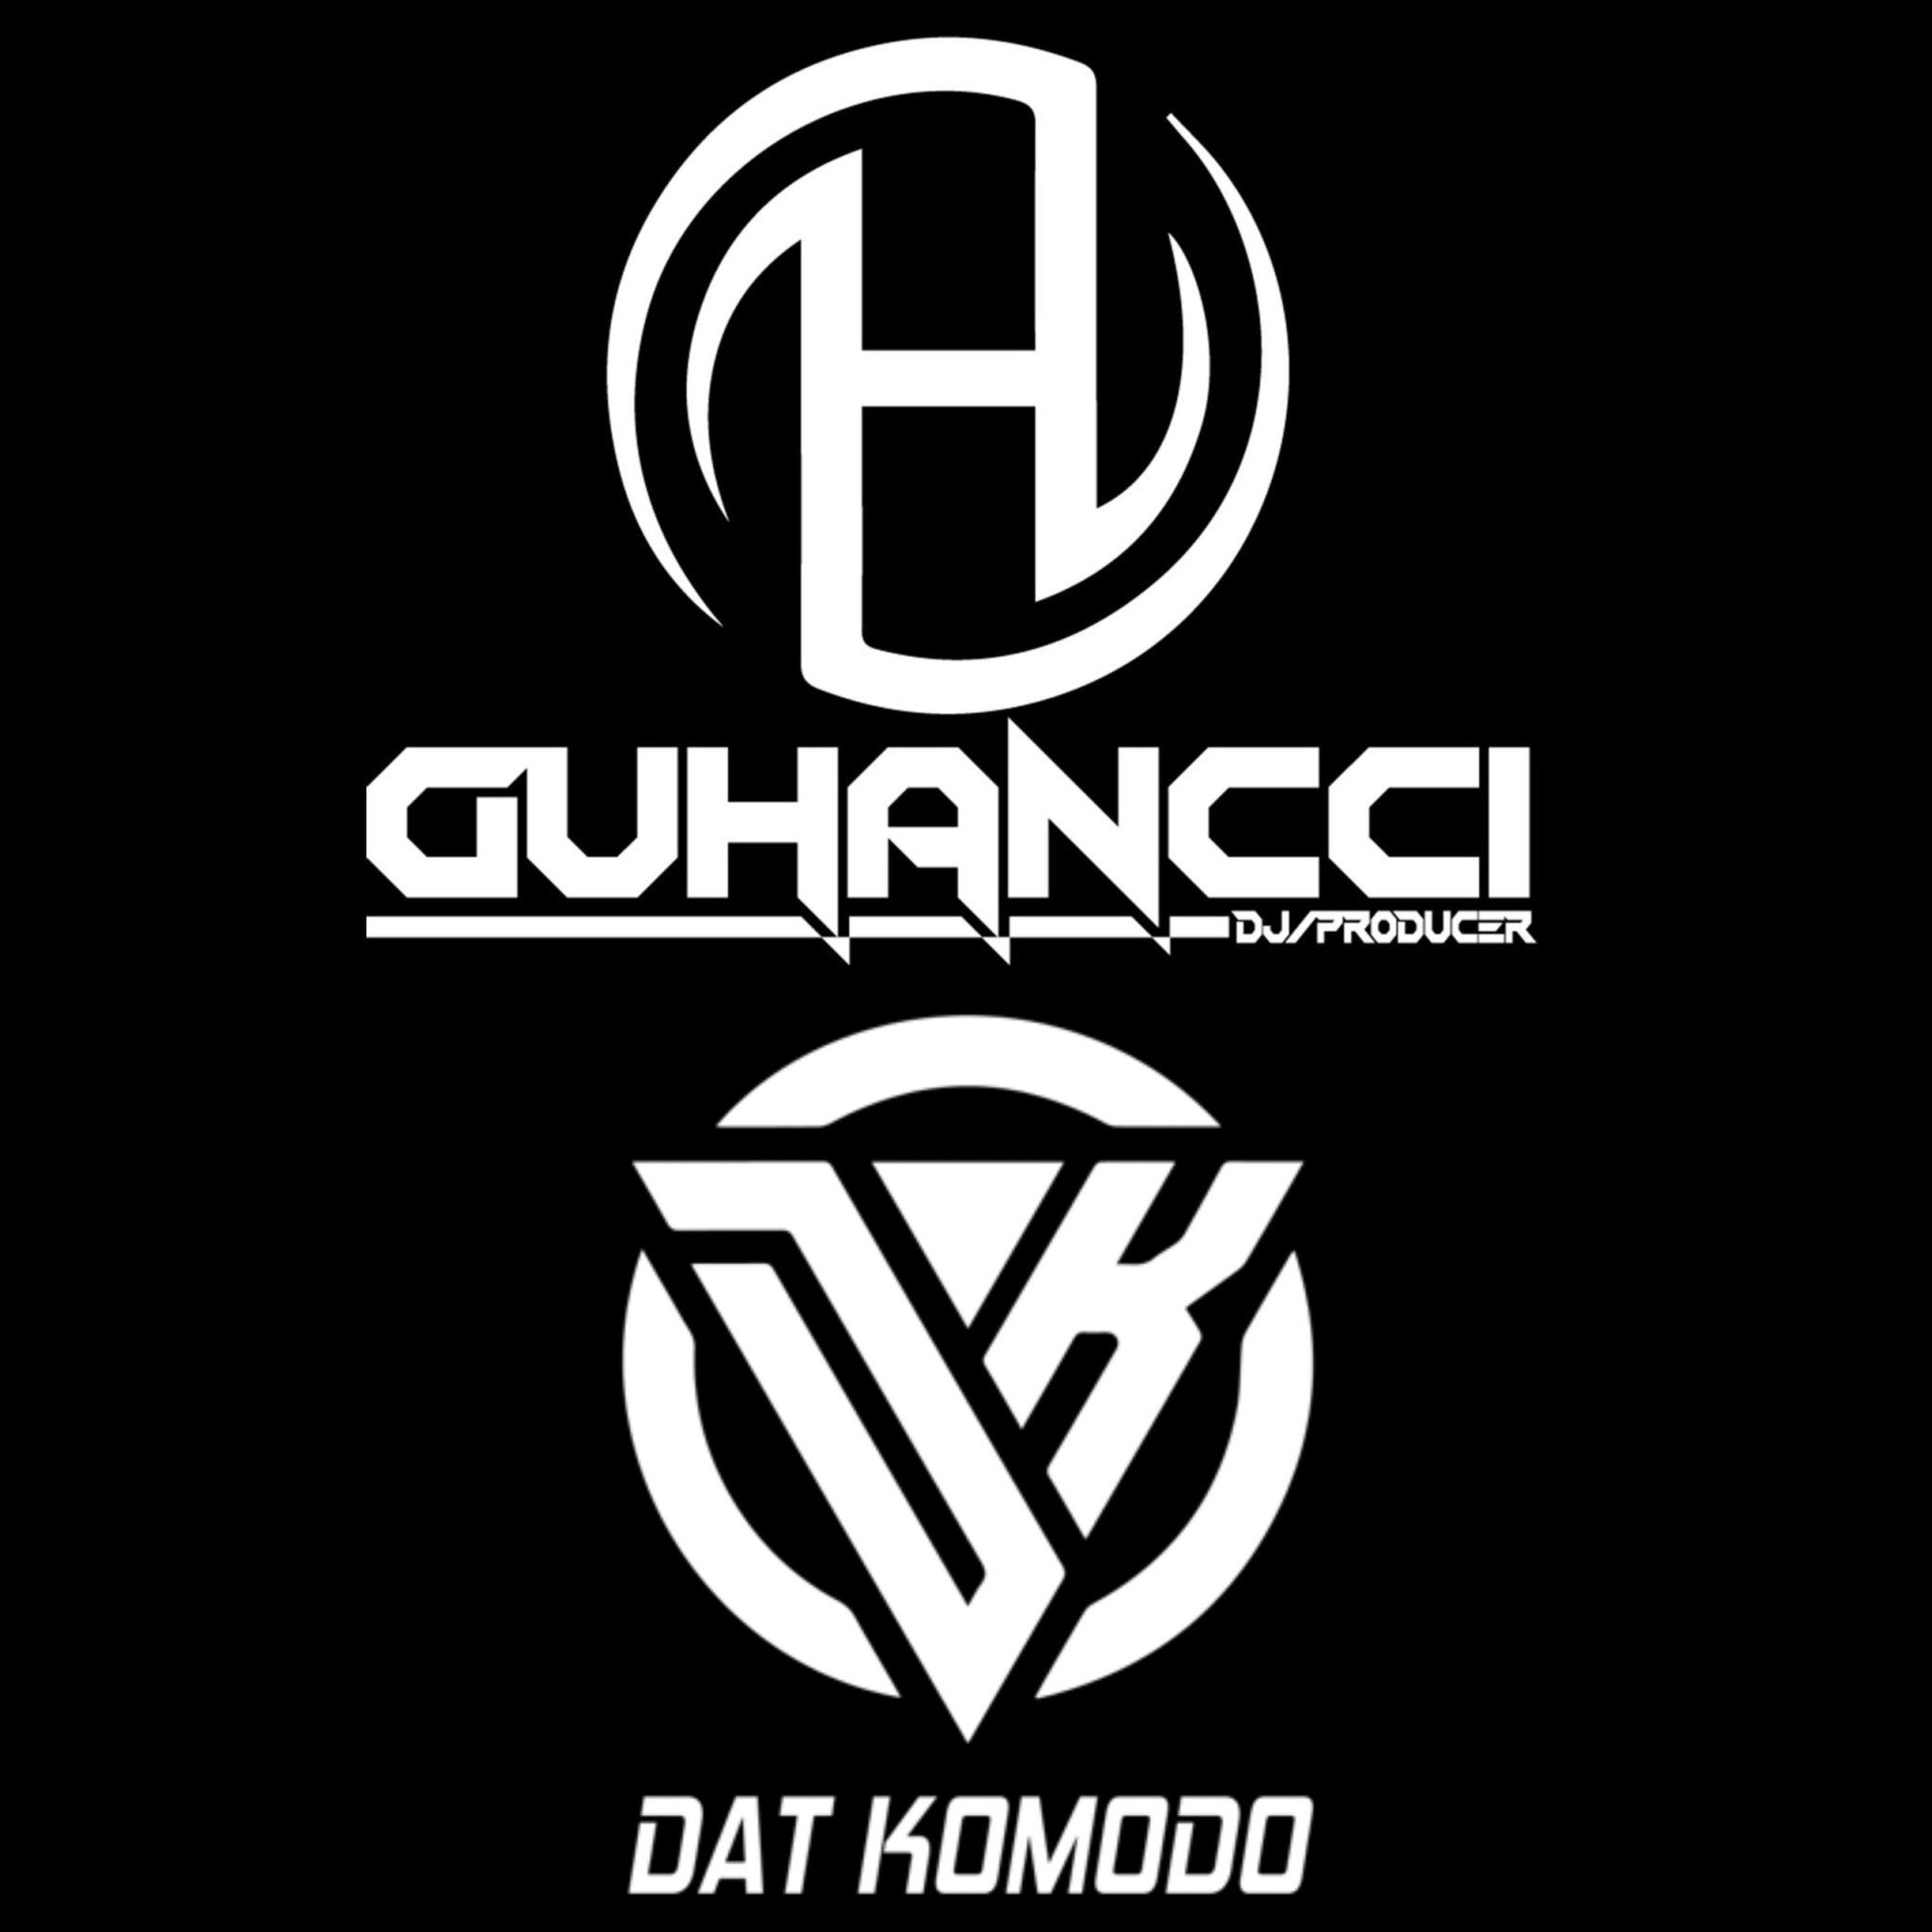 Ladata Express Music - DatKomodo ft guHancci (guHancci Team)